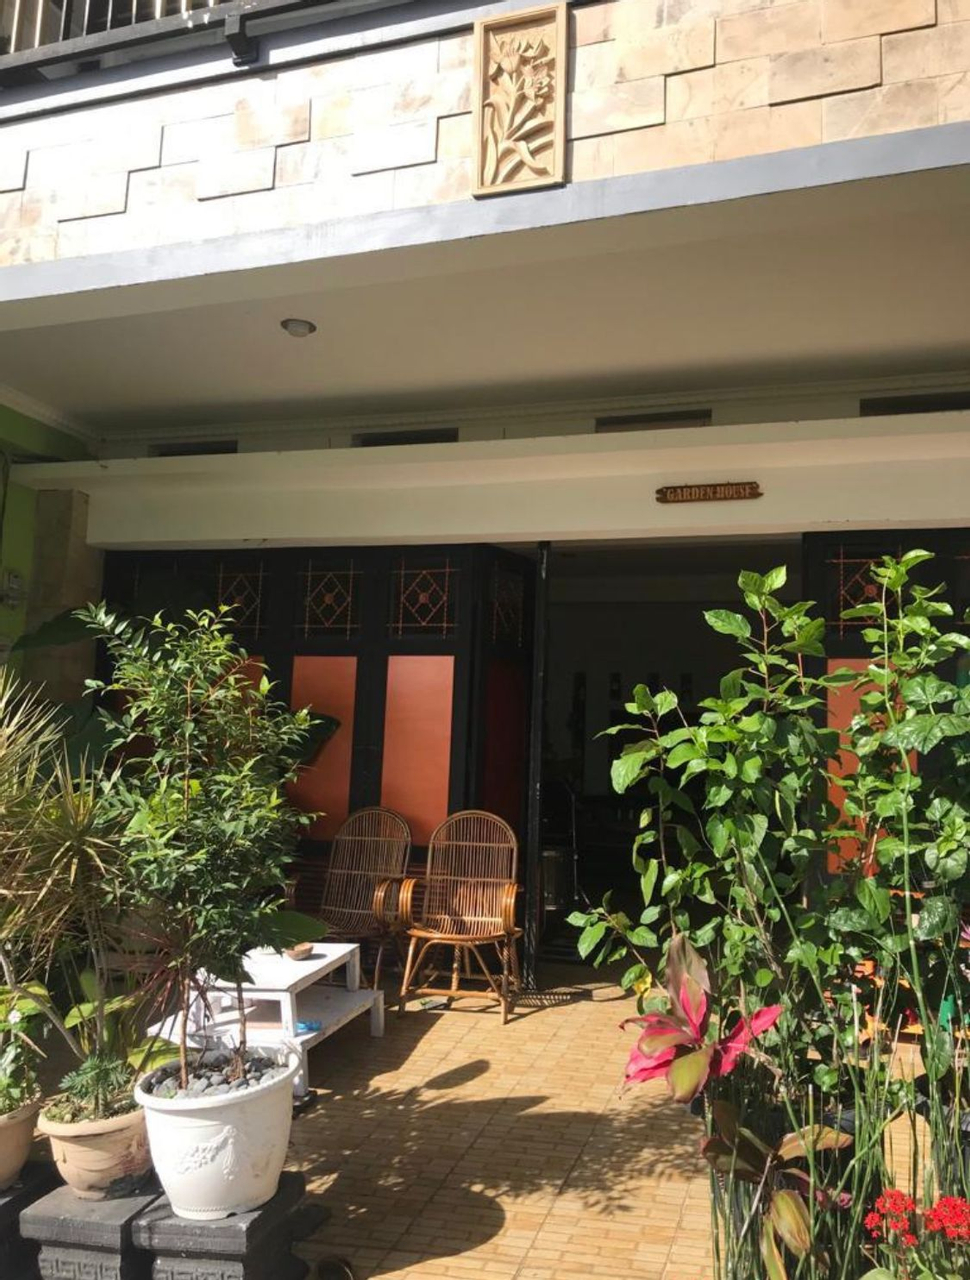 Exterior & Views 4, Garden House Village and Lounge Villa, Bandung